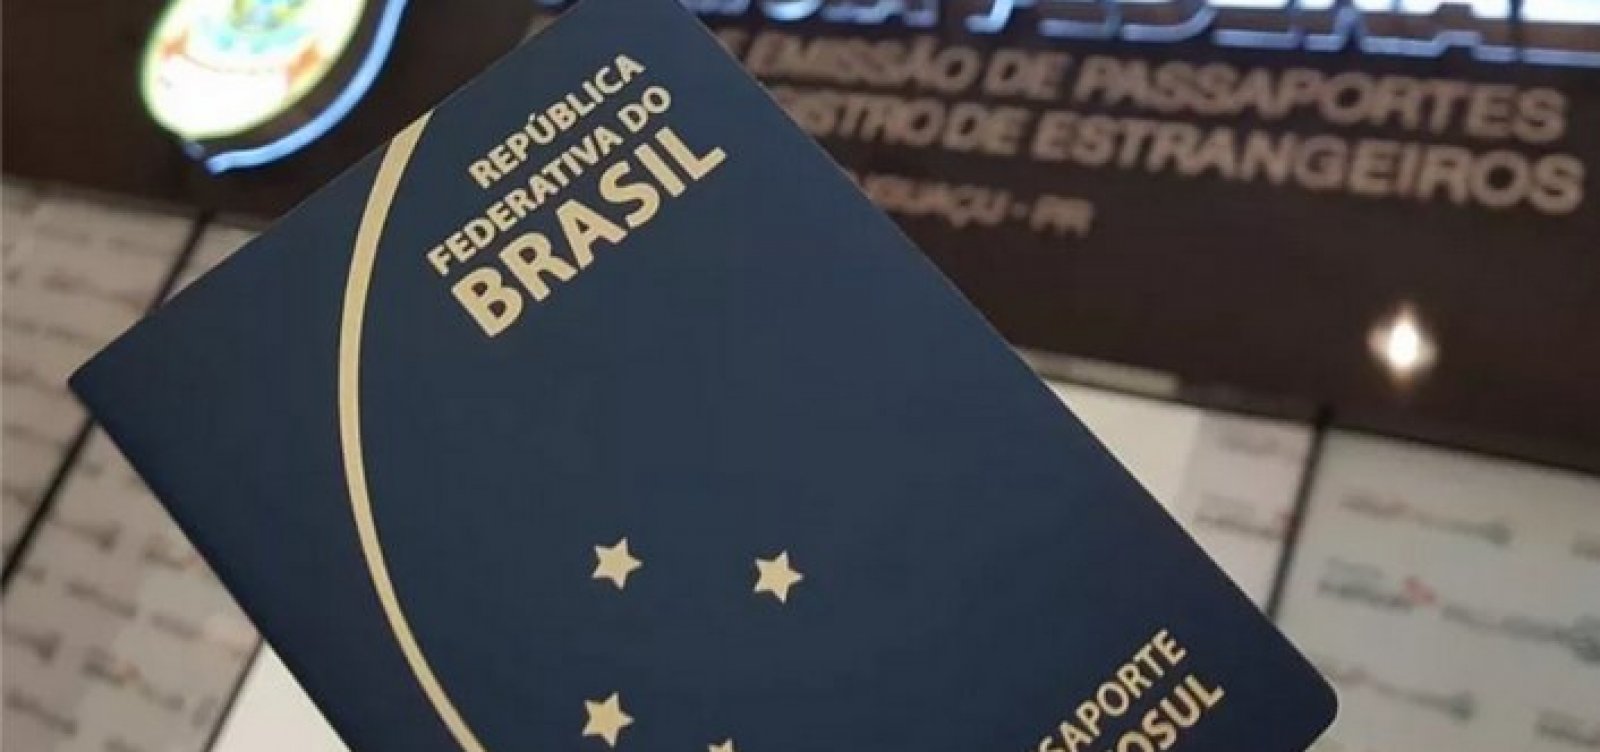 Posto de emissão de passaporte do Sac do Salvador Shopping será fechado